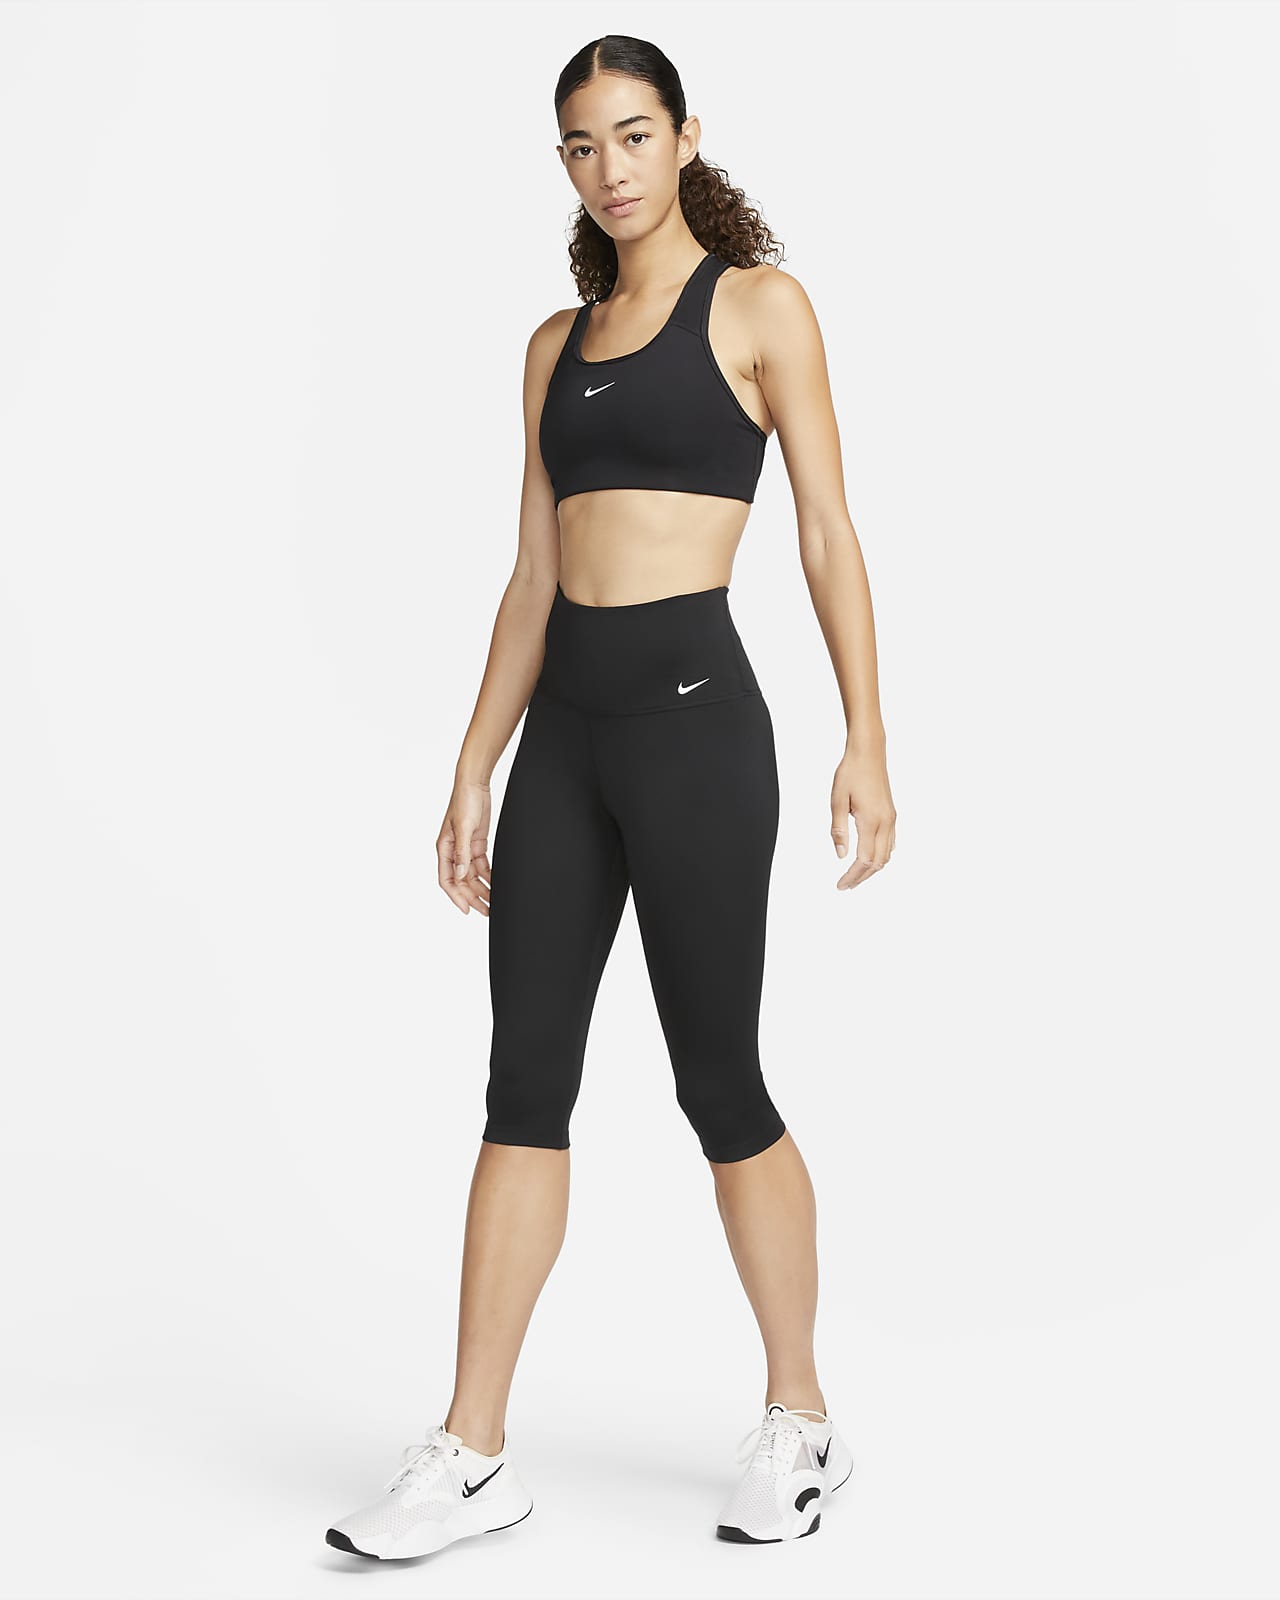 Nike One Womens High Waisted Capri Tights Black XS